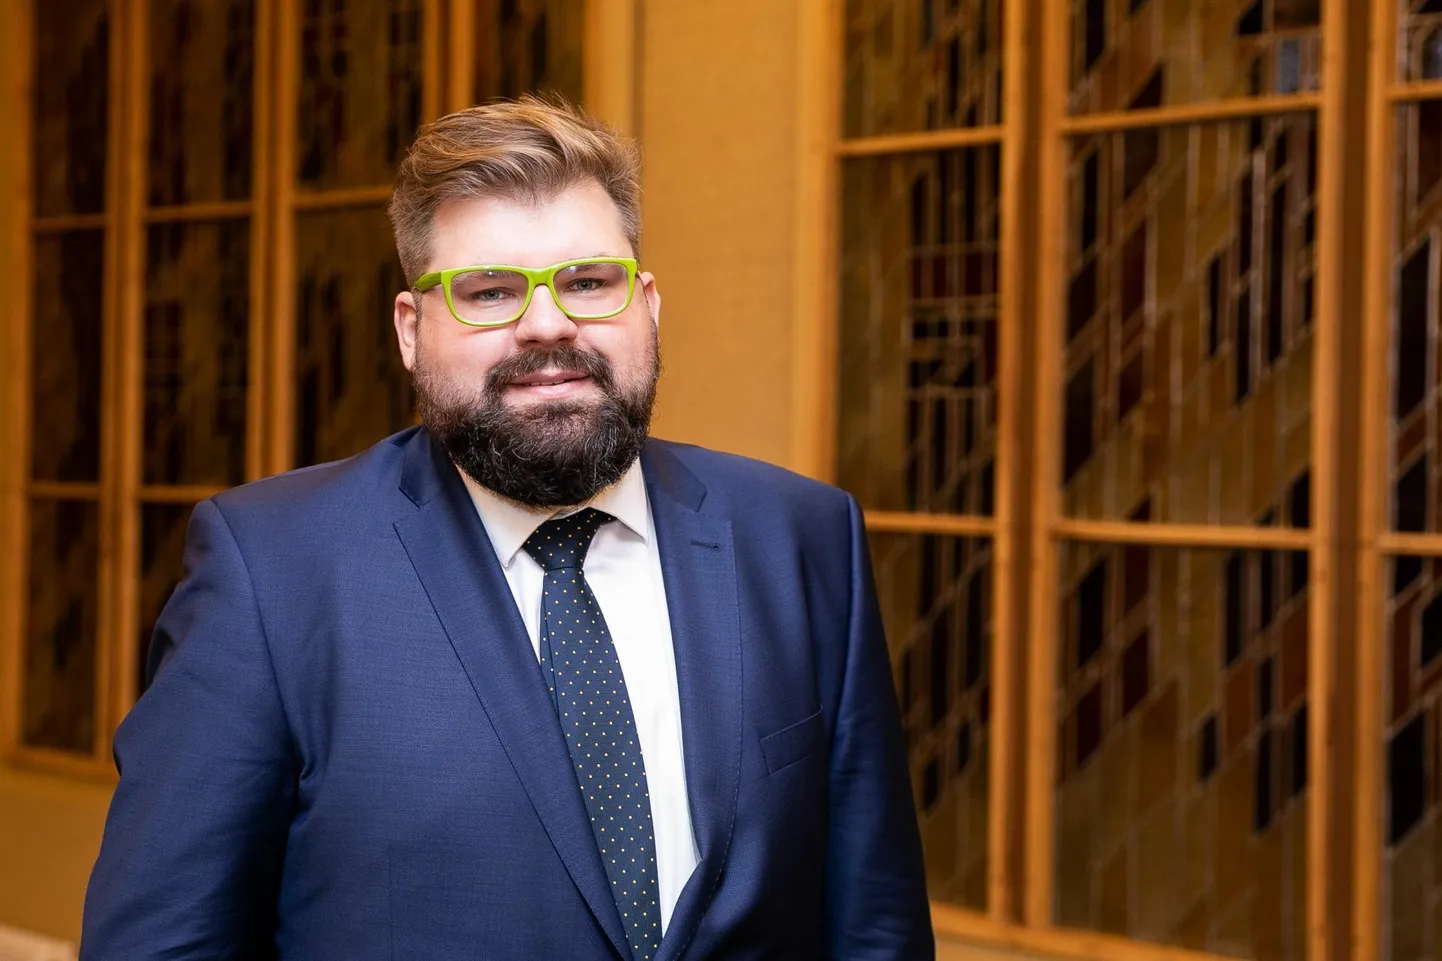 Leedu võimuerakonda Isamaaliitu esindav Kristijonas Bartoševičius 2020. aasta sügisel seimi uue koosseisu avaistungil. Üleeile loobus ta kohast parlamendis, misjärel selgus, et teda kahtlustatakse seksuaalkuritegudes alaealiste vastu. 